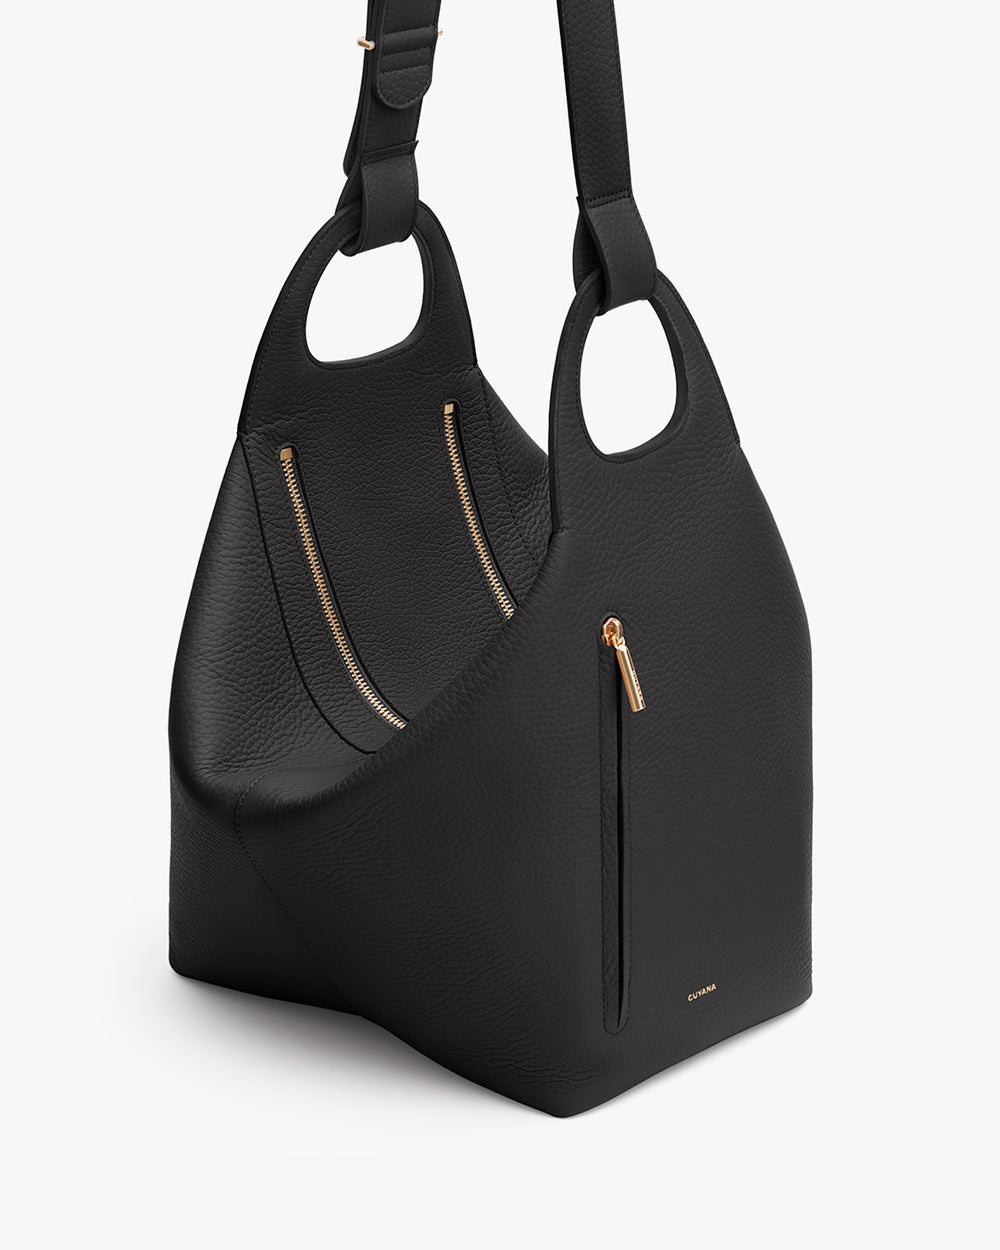 Black handbag with a zip pocket and shoulder strap.